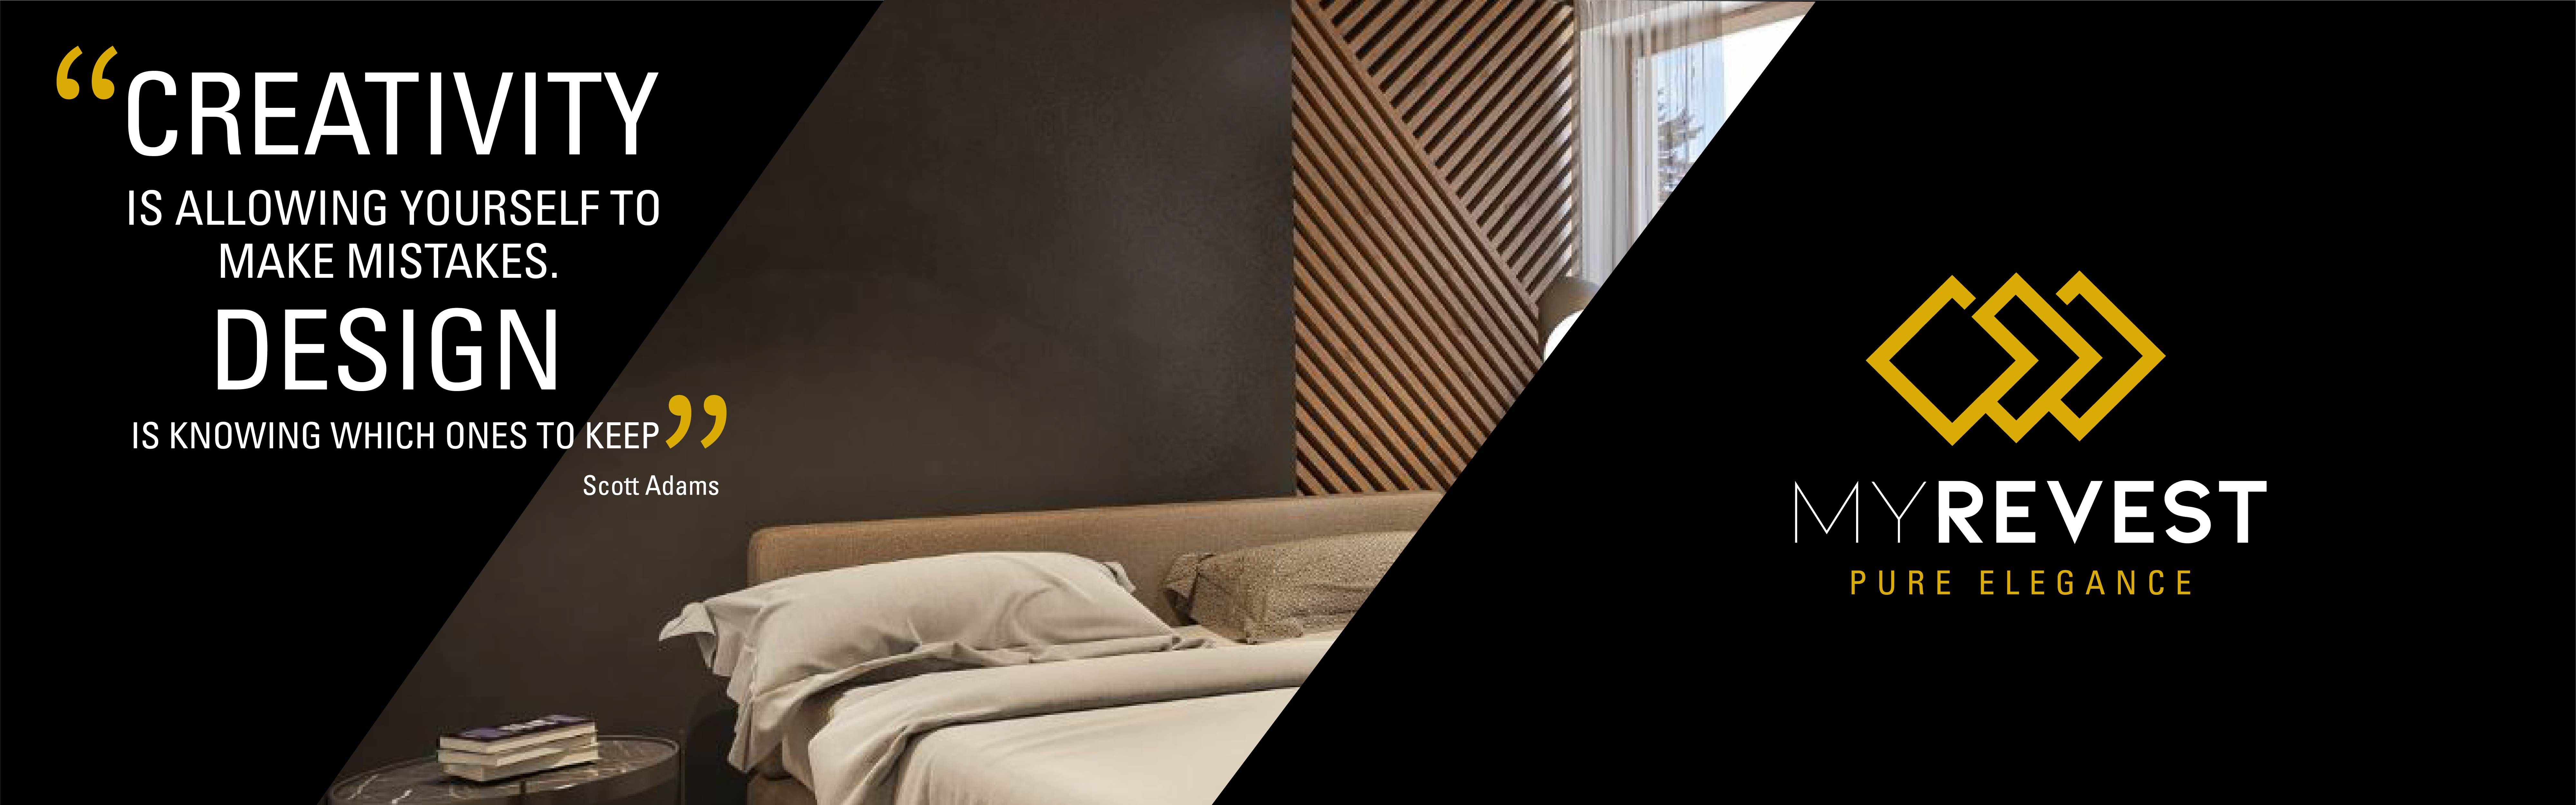 Revestimiento de microcemento en la pared de un dormitorio de estilo minimalista junto al logo de MyRevest